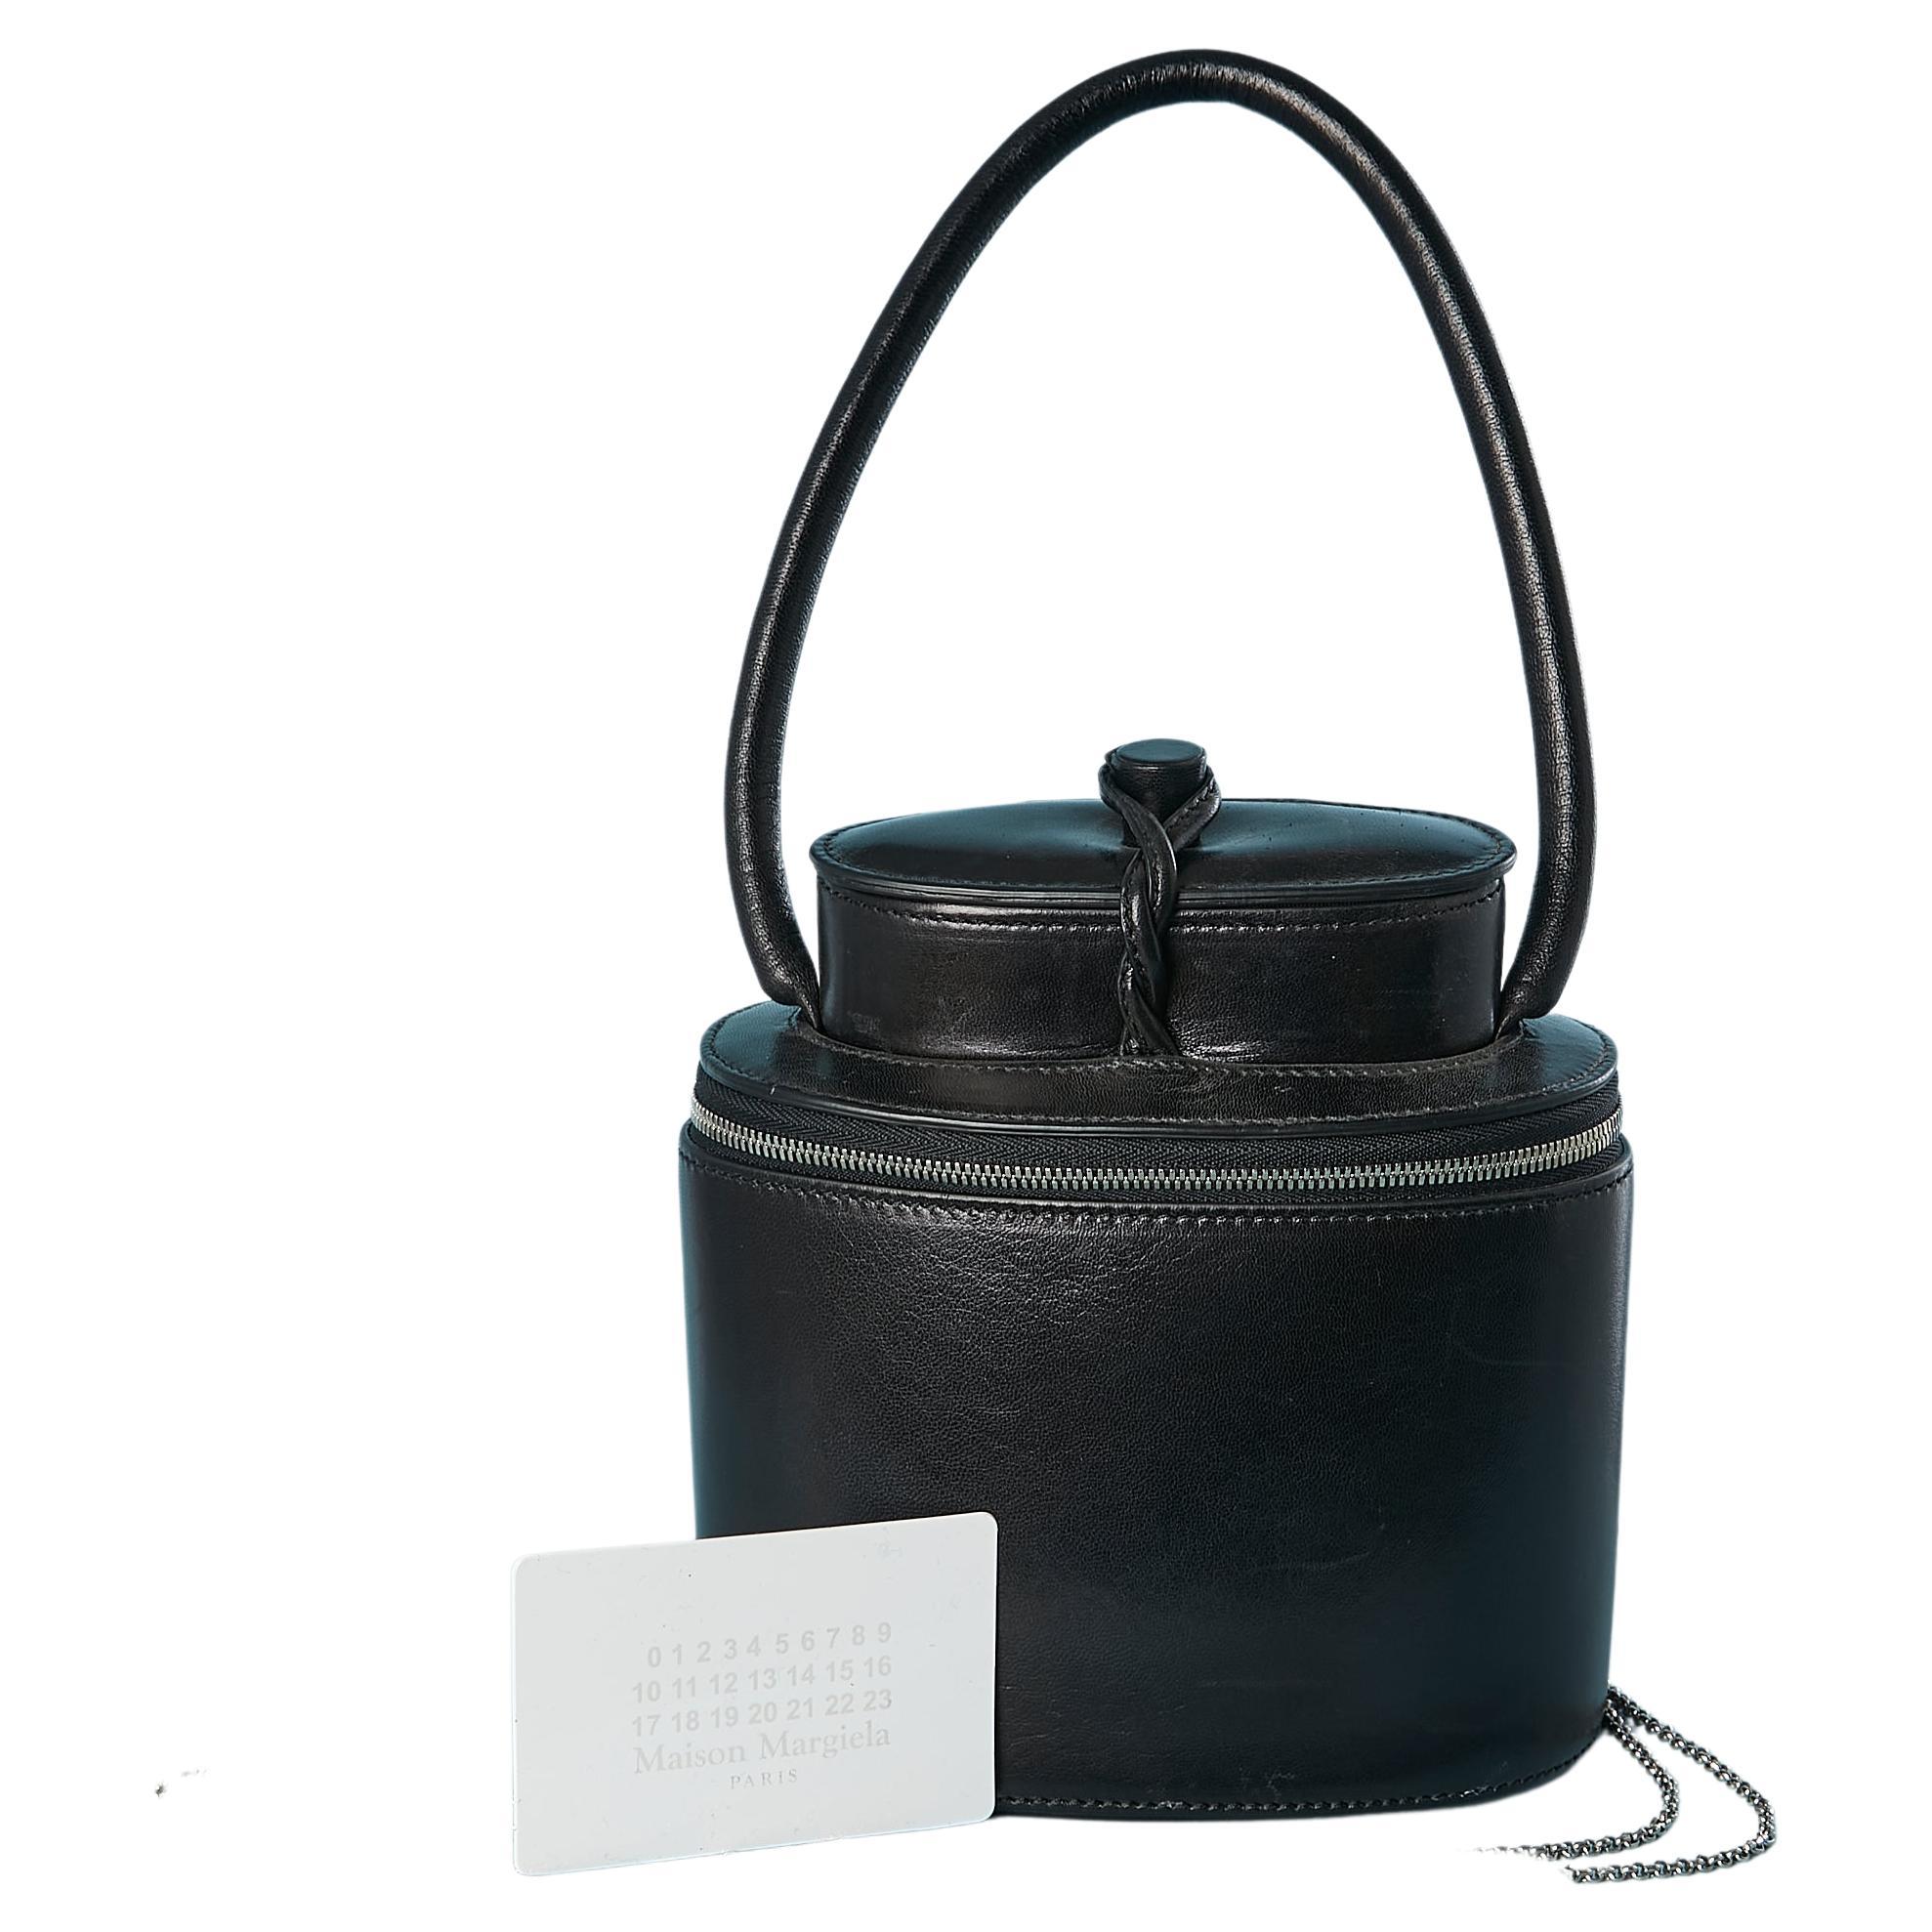 Black leather handbag "Replica" Maison Margiela 